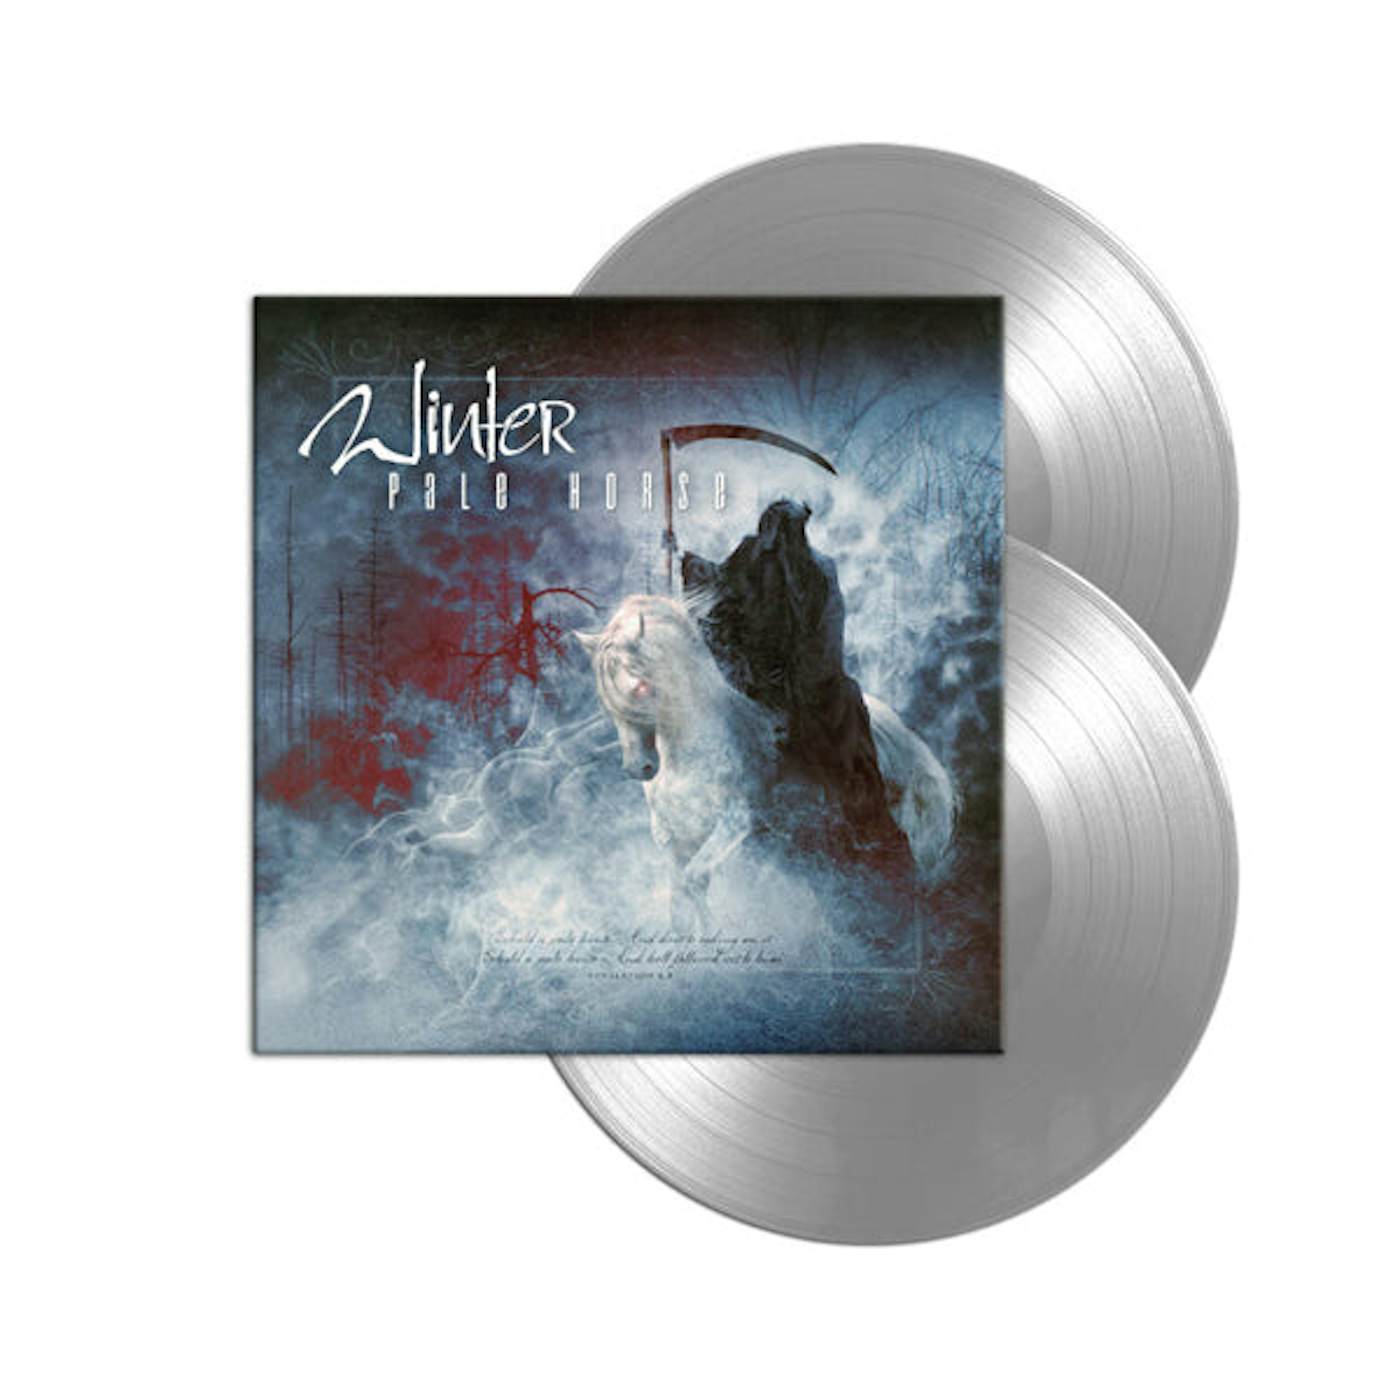 Winter LP - Pale Horse (Silver Vinyl + Cd)